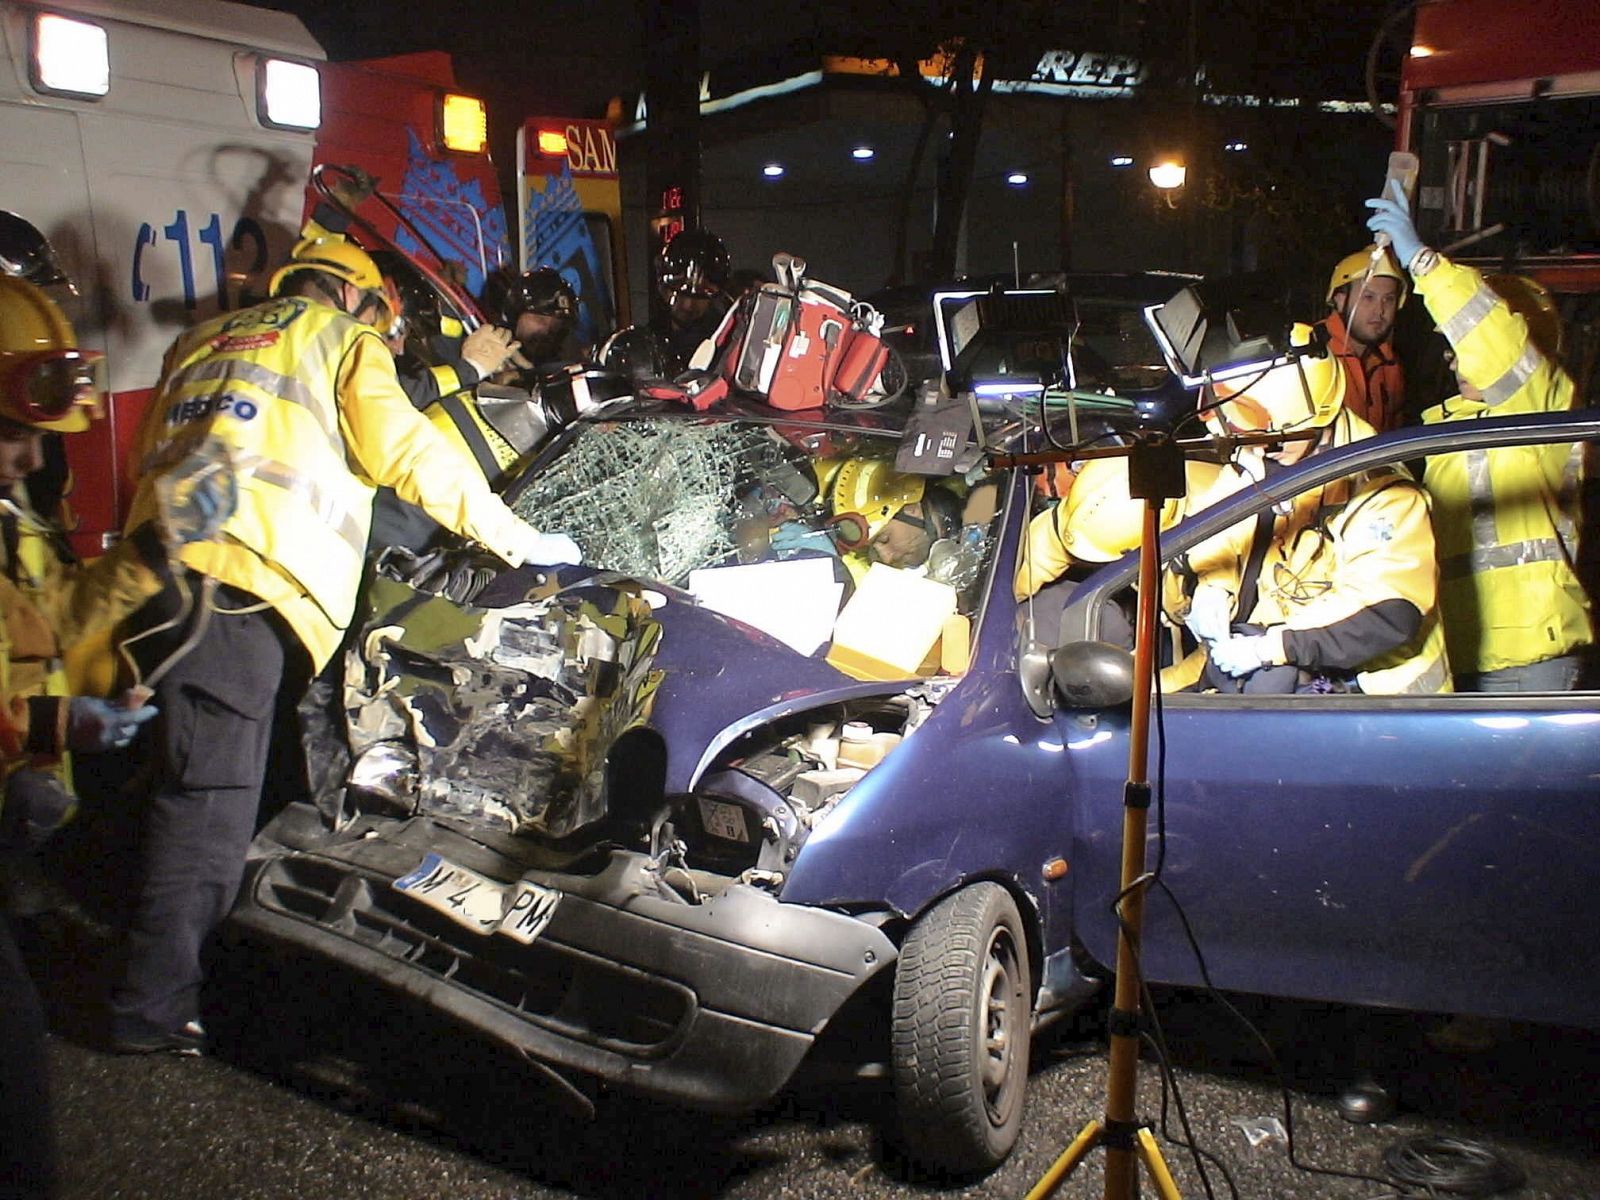 Dos personas han resultado heridas en la madrugada del 19 de octubre cuando el vehículo en el que circulaban chocó contra un autobús en el distrito madrileño de San Blas. Los bomberos han tenido que rescatar a los heridos que se han quedado atrapados